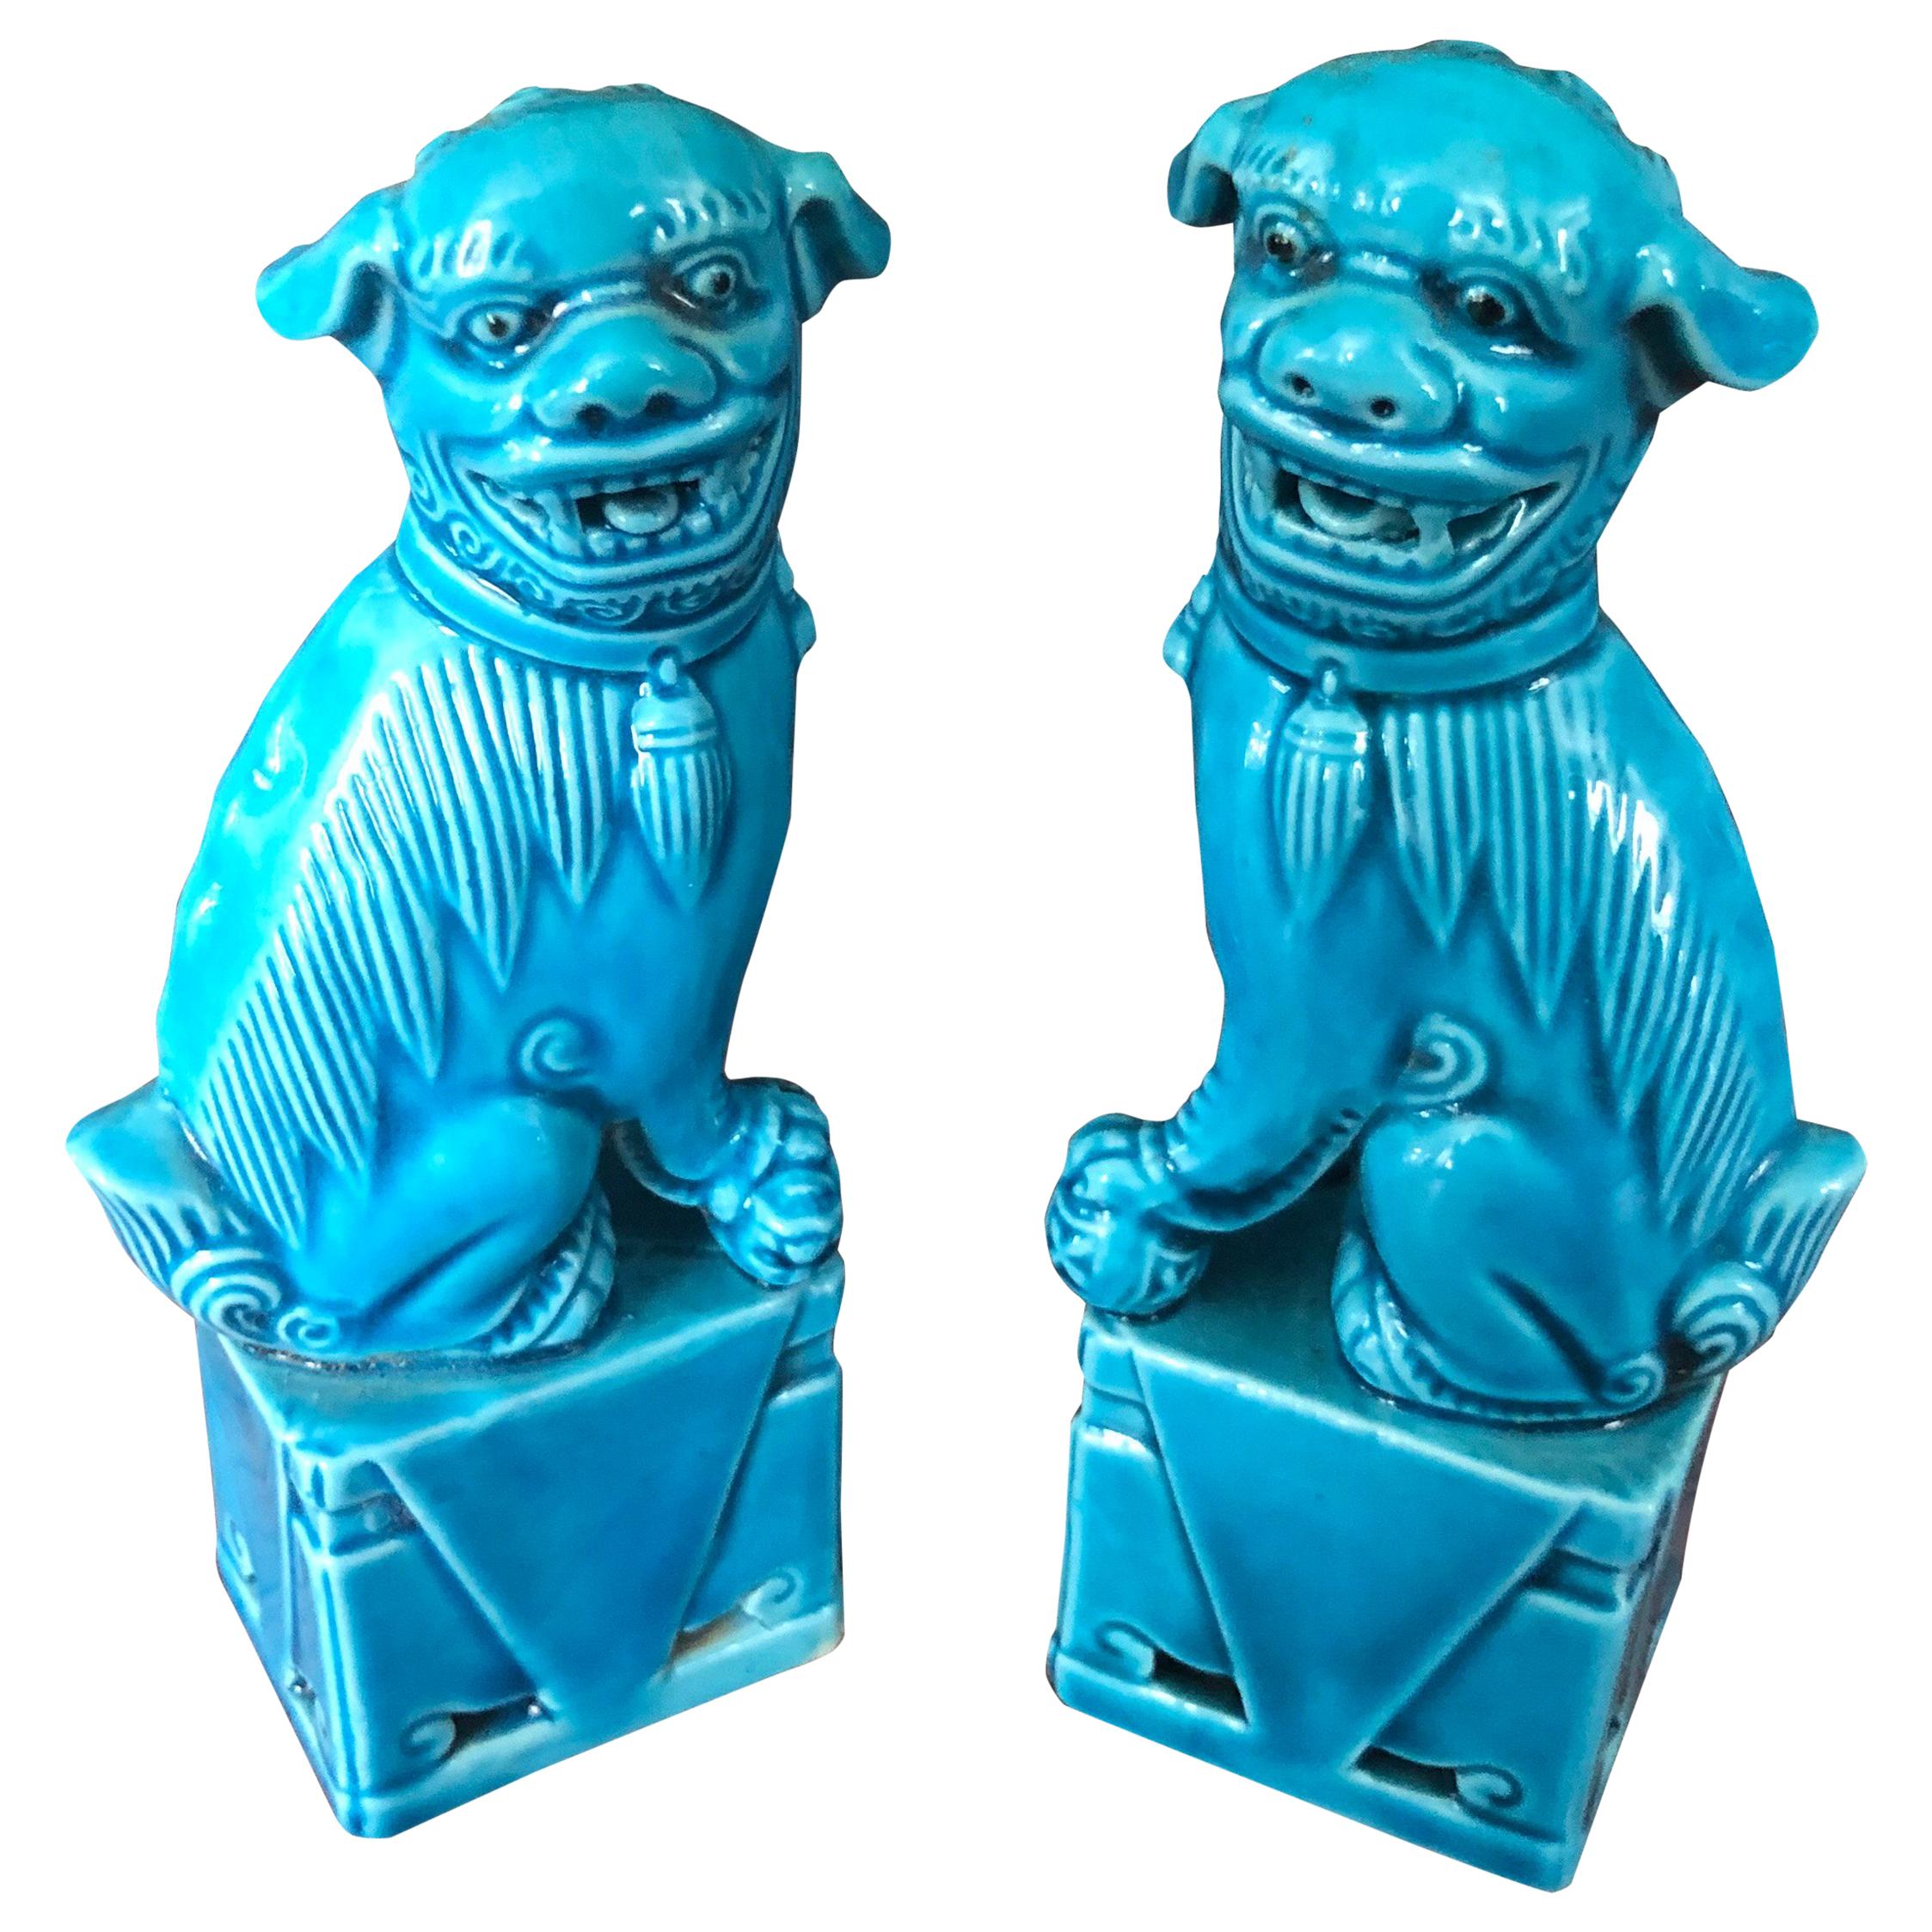 Unique Pair of Decorative Mini Foo Dogs Sculptures